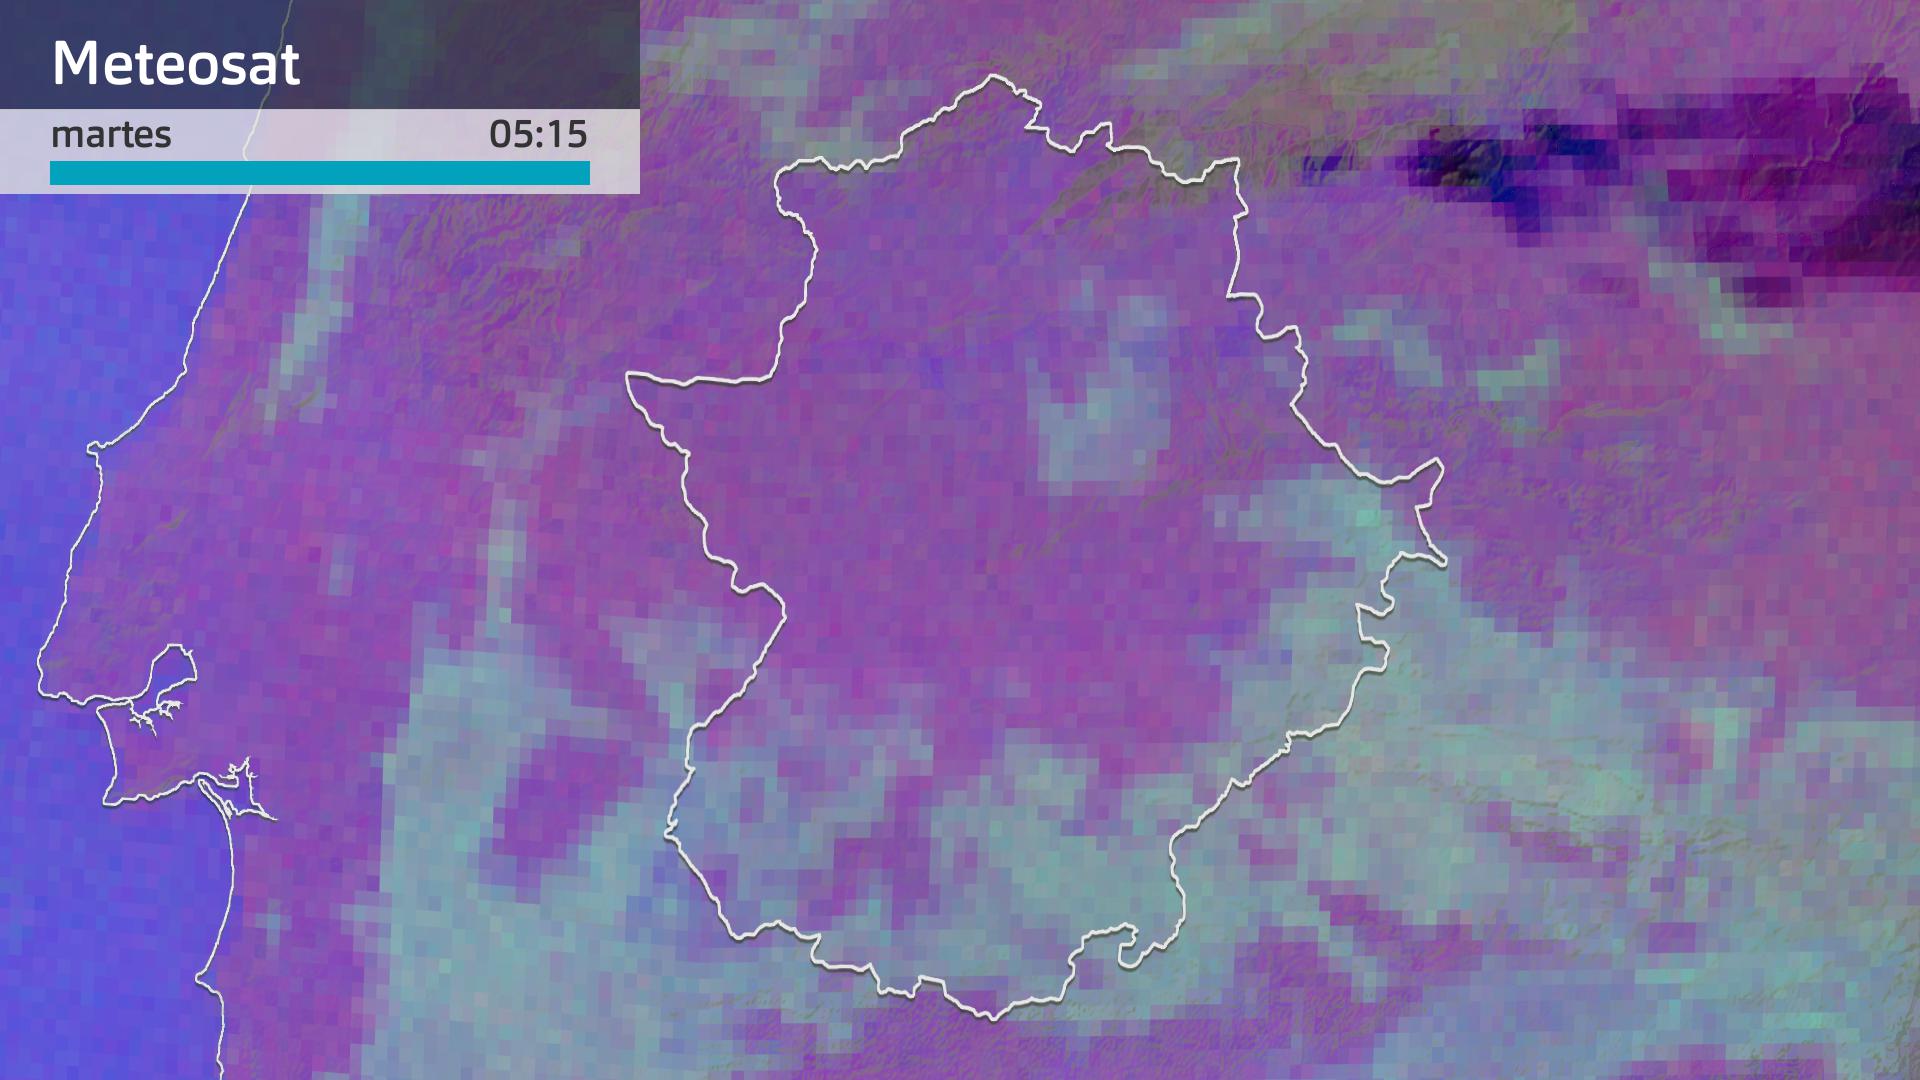 Imagen del Meteosat martes 21 de noviembre 5:15 h.